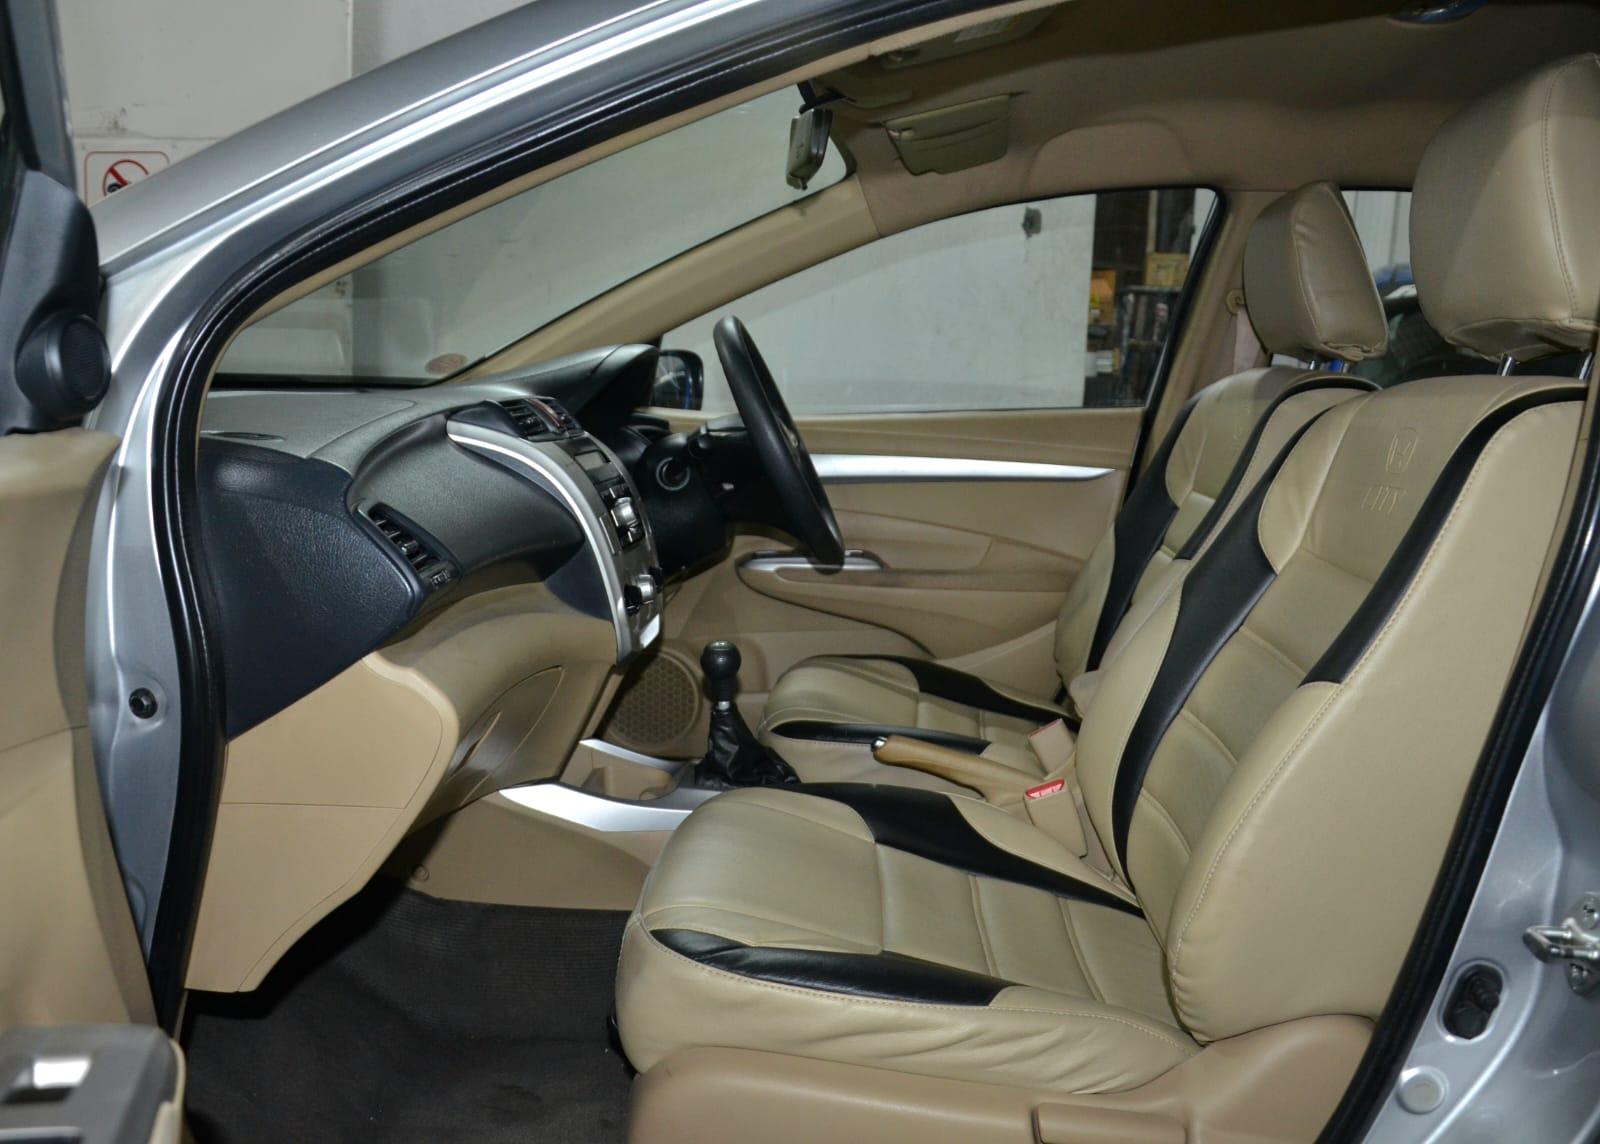 Honda City VMT i-VTEC 2011 Model In Showroom Condition